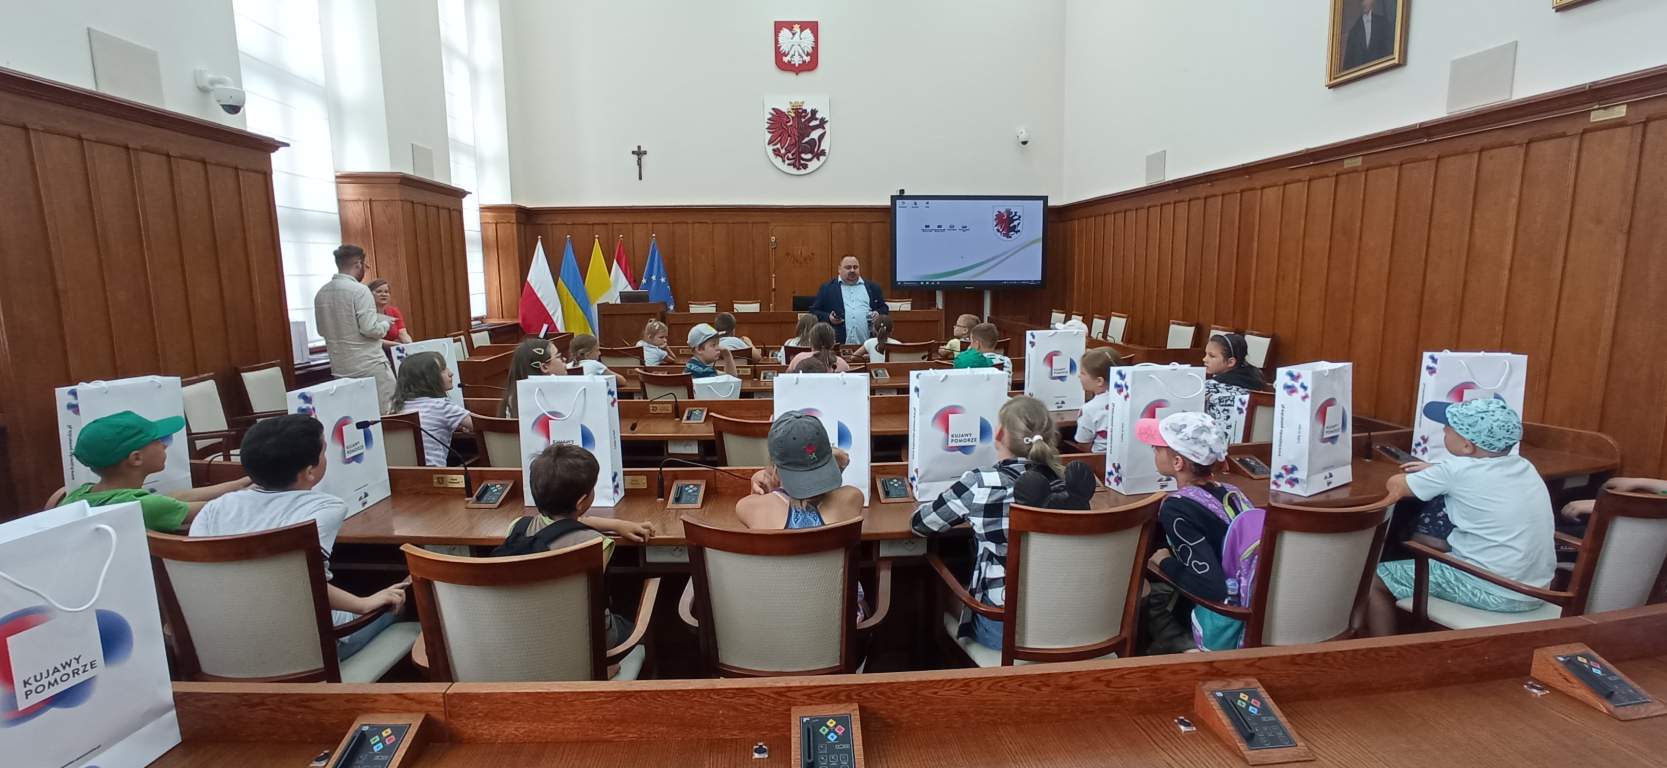 Fotografia przedstawia uczestników zajęć wraz z Dyrektorem Biblioteki w Sejmiku Wojewódzkim. Słuchają wypowiedzi naszego dyrektora a w tle widać flagi i godło